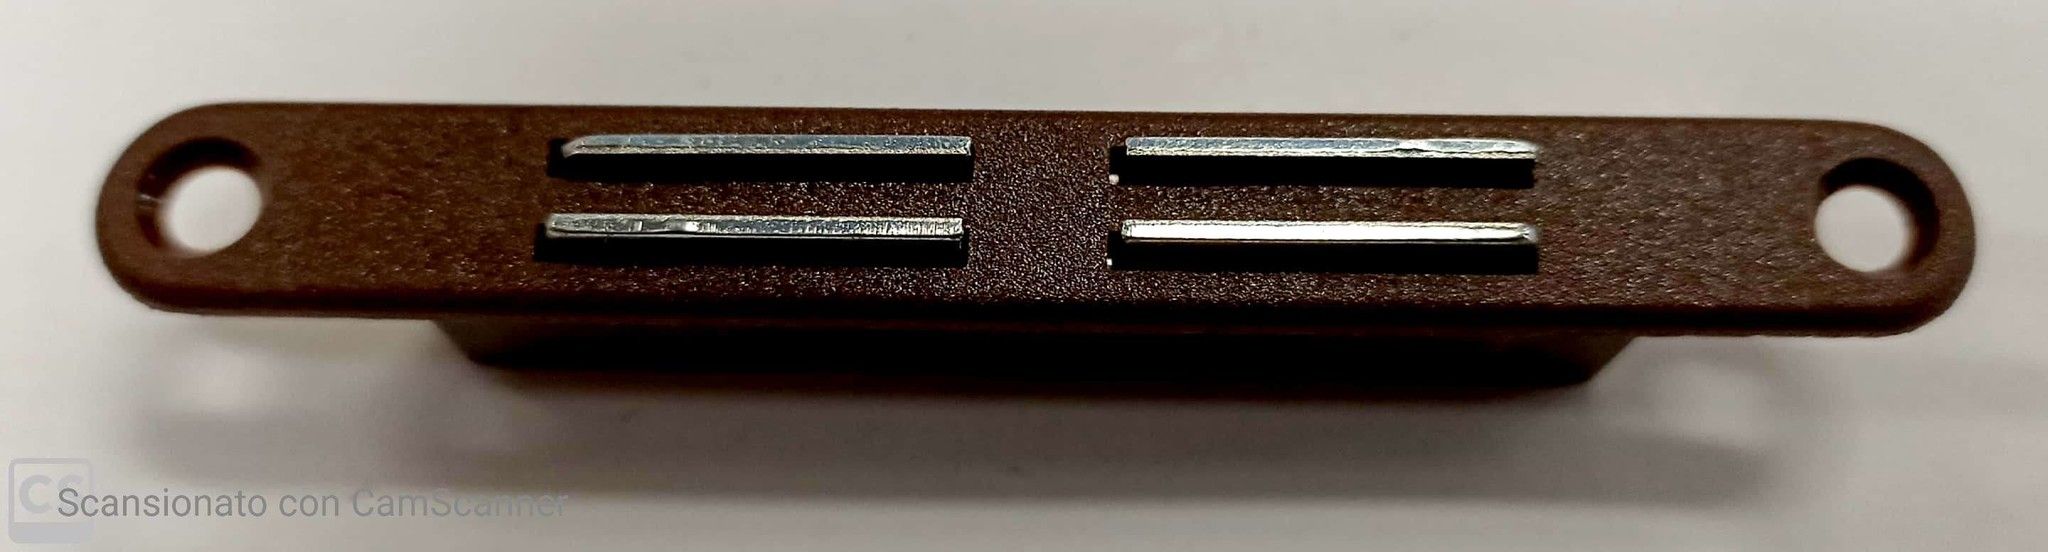 Cricchetto magnetico da infilare per porte scorrevoli